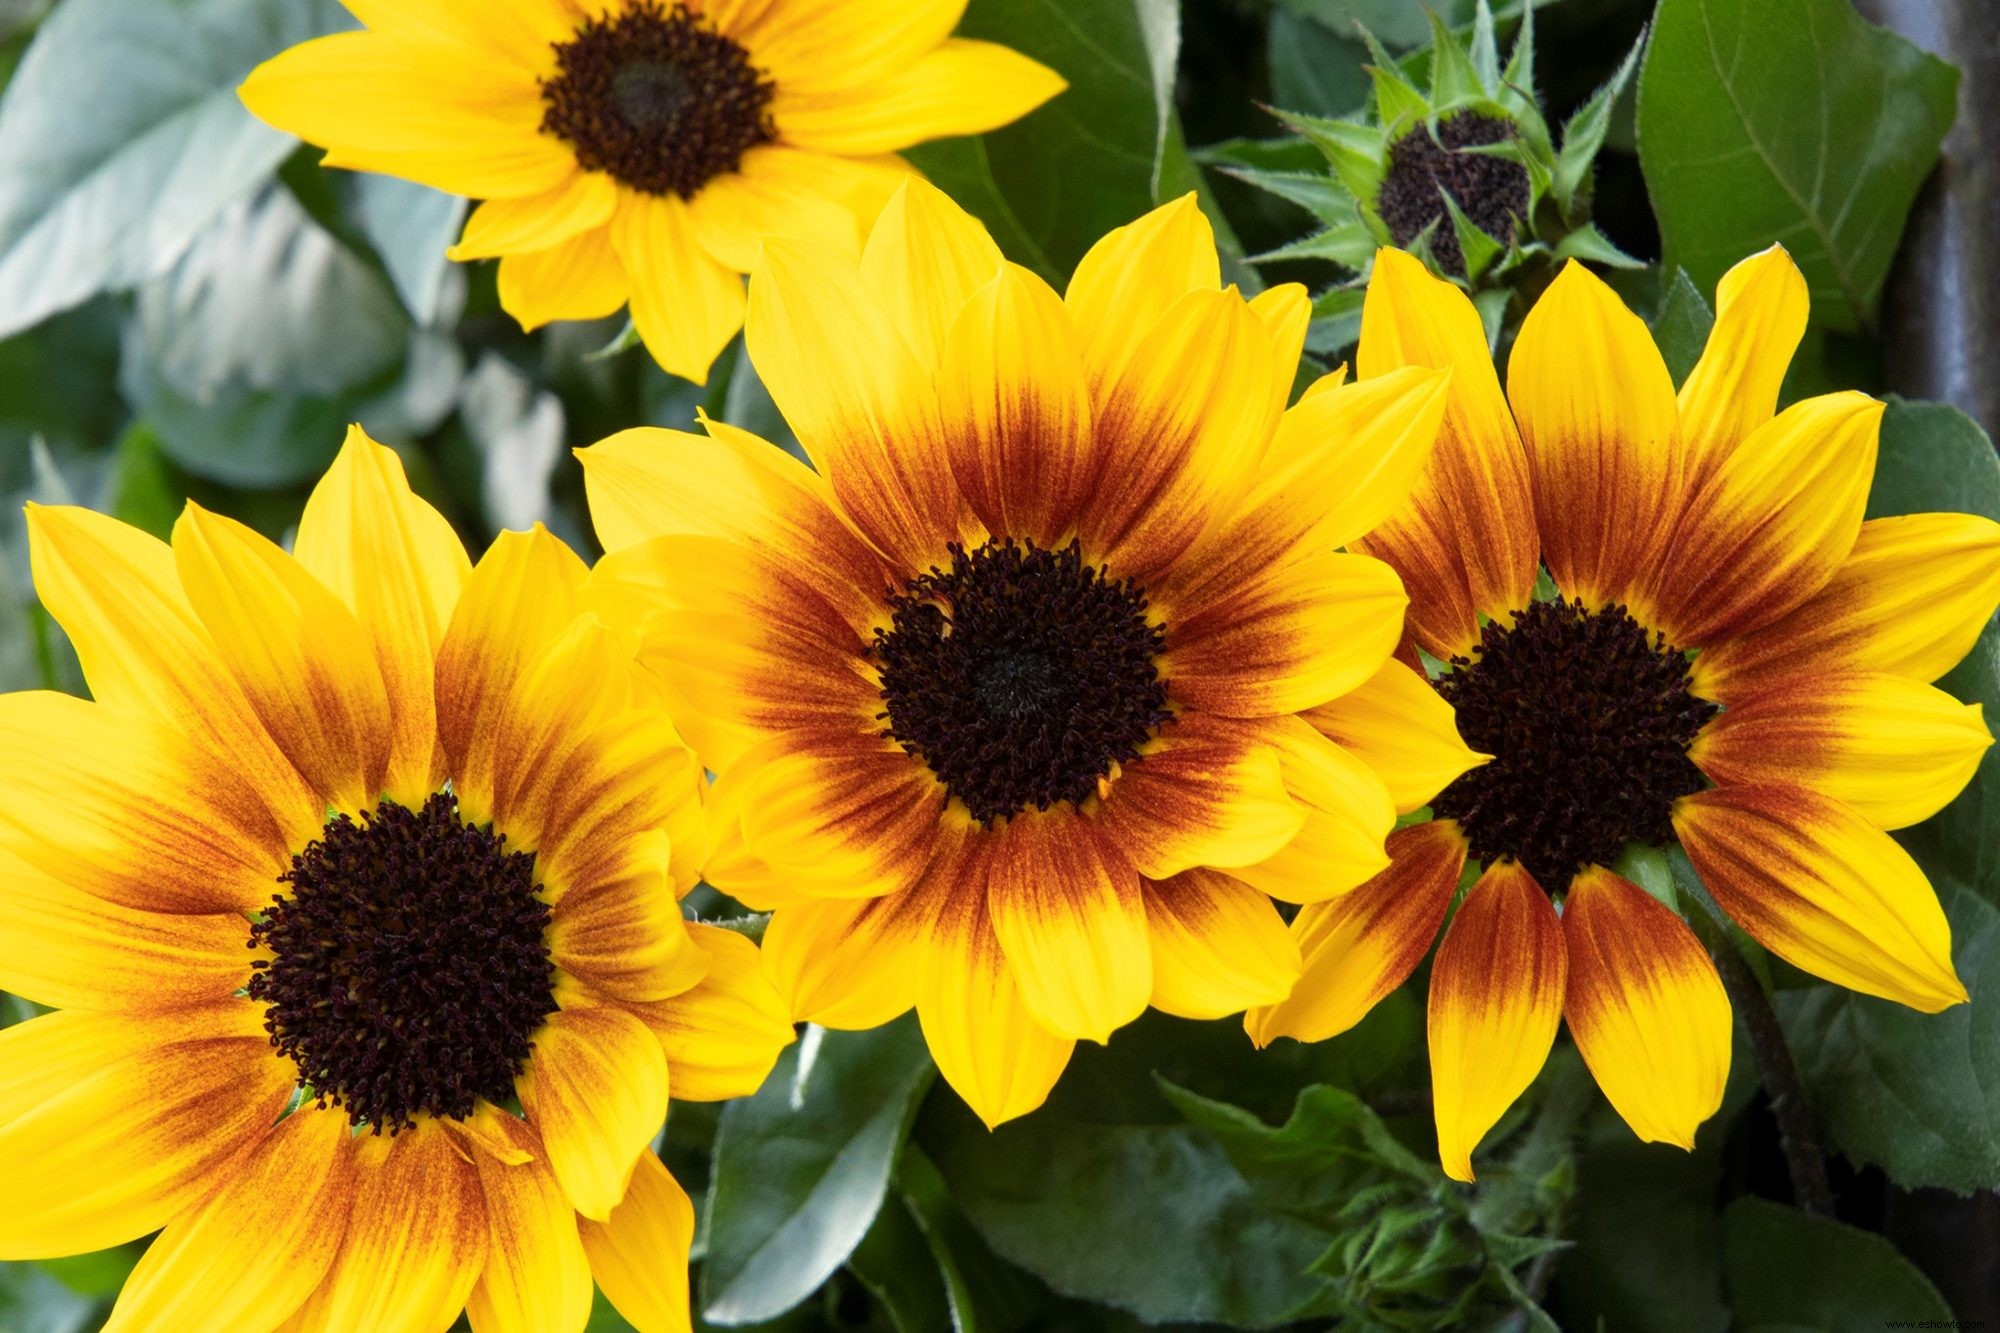 Sunbelievable Sunflower produce un espectáculo continuo de alegres flores durante toda la temporada 